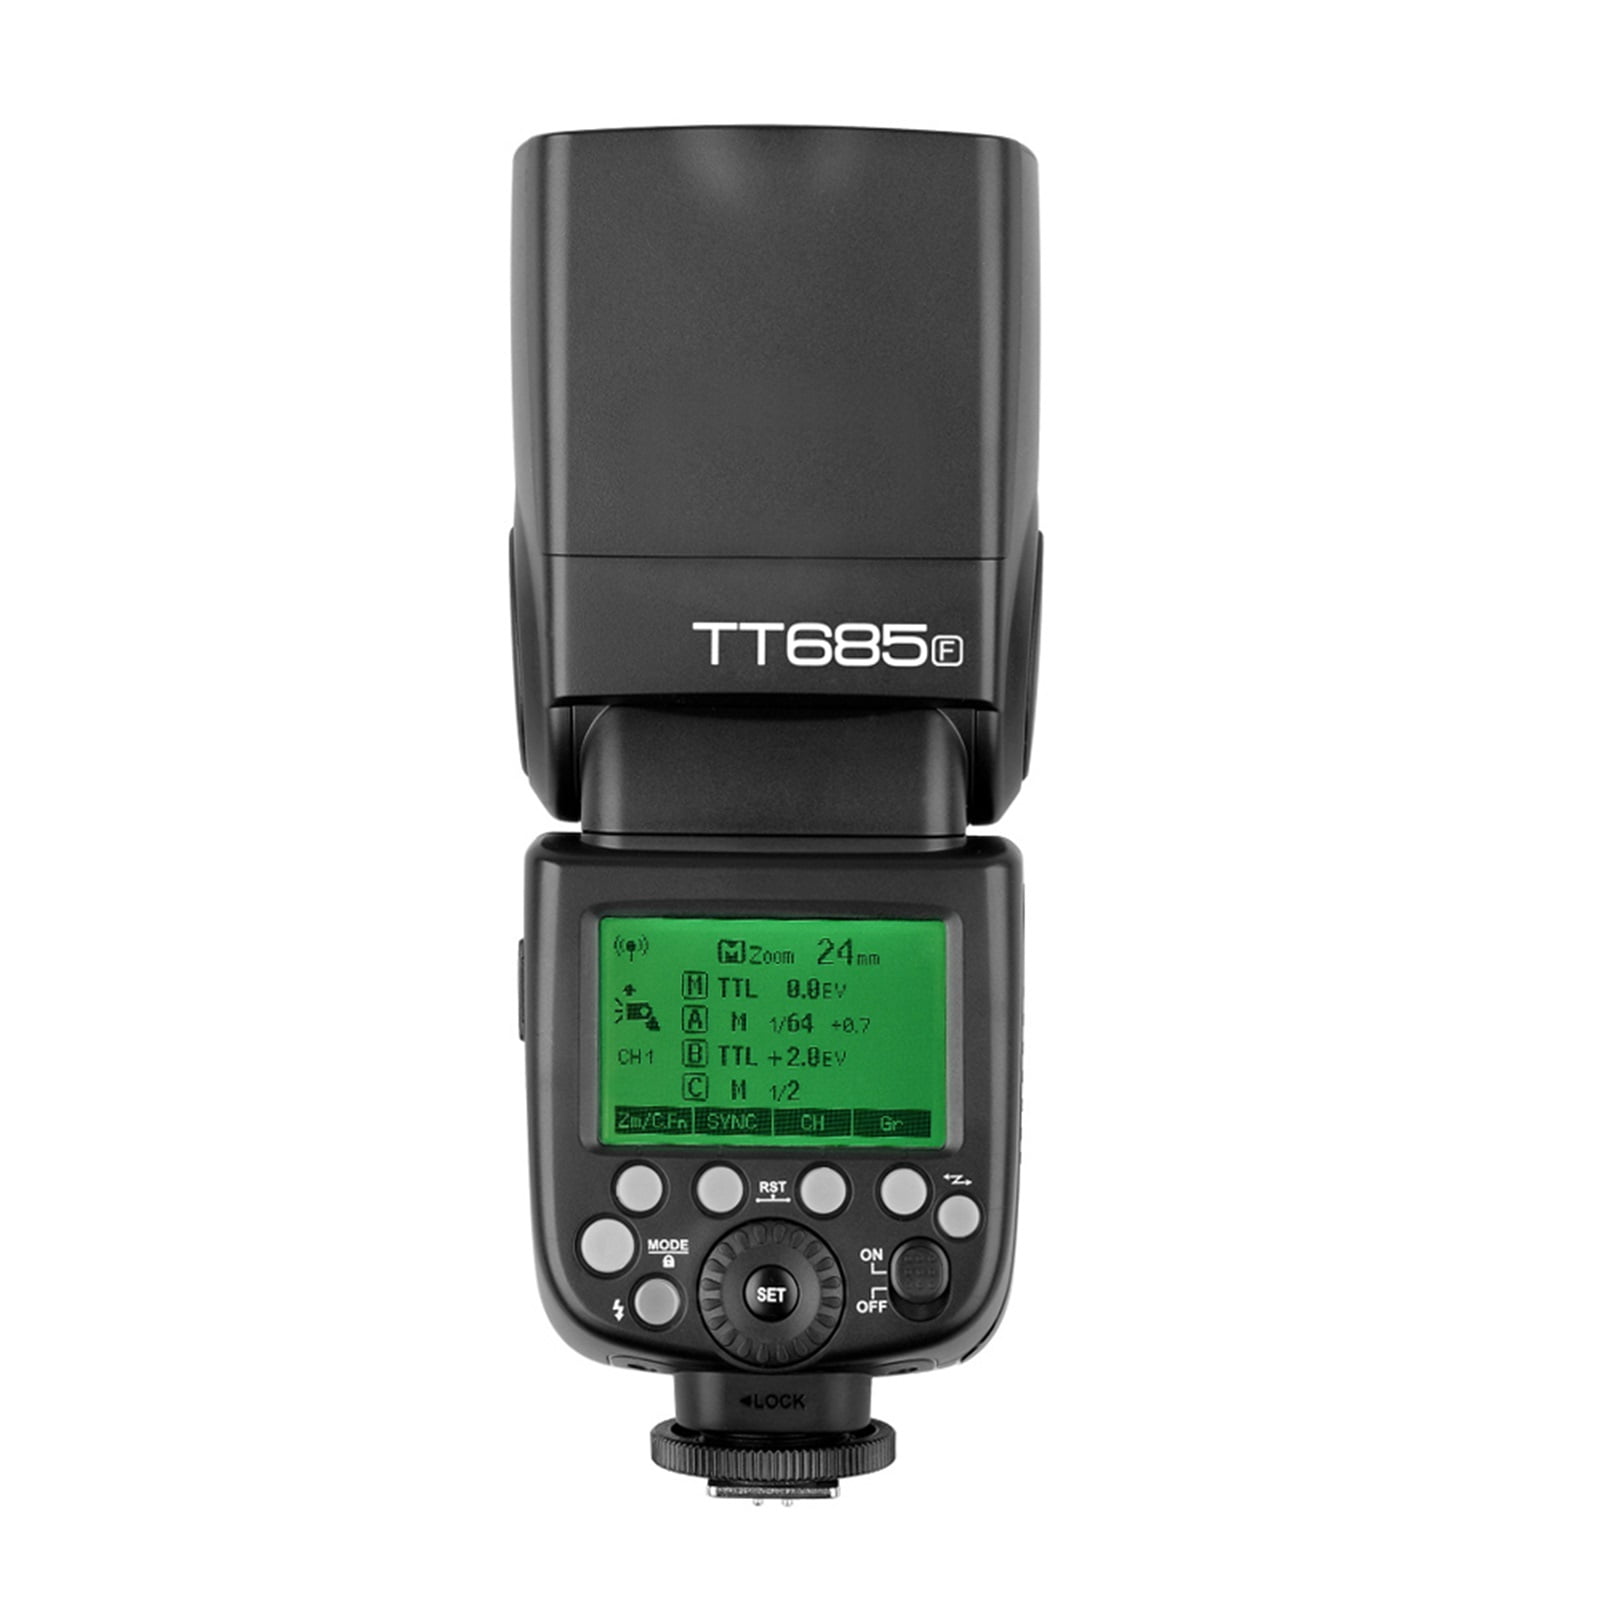 Godox tt685f 2.4g TTL cámara FLASH SPEEDLITE para Fuji x-pro2 x-t20 x-t1 x-t2 